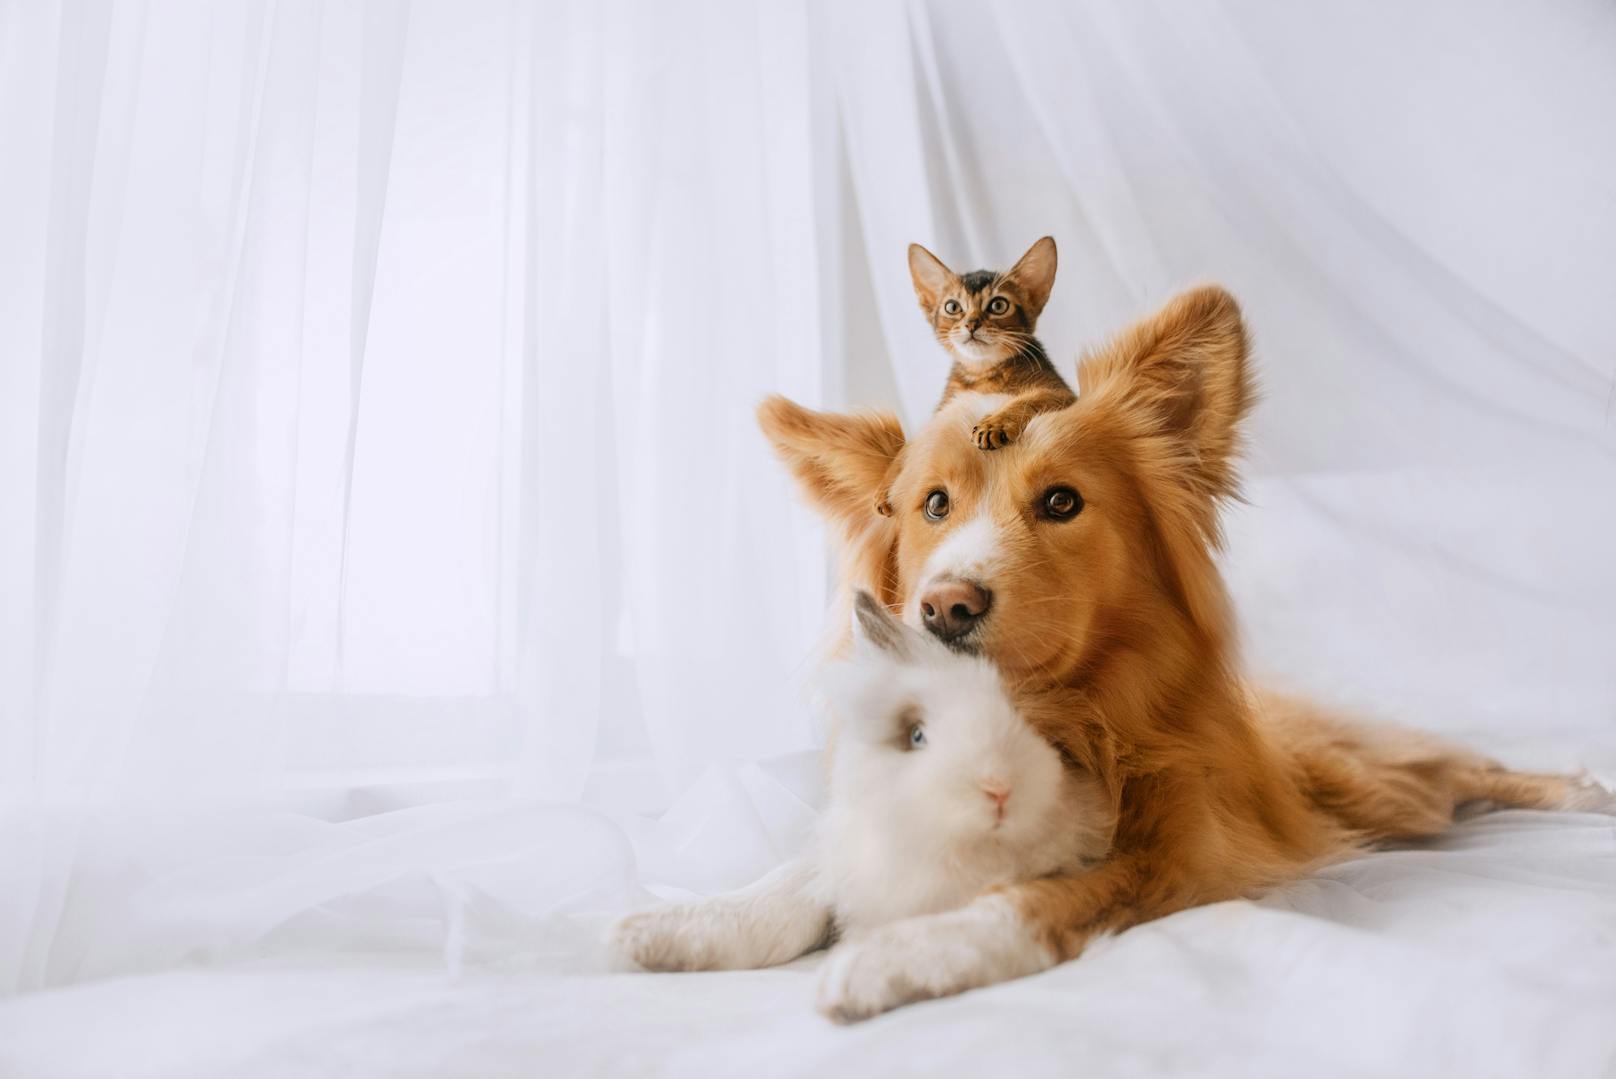 <strong>4. Wohnungskatzen sind freundlicher zu Mitbewohnern: </strong>Lebt die Katze im Haus, ohne Freigänger zu sein, hilft das der Beziehung zwischen Hund und Katze, weil sie mehr Zeit miteinander verbringen. Sie sollten jedoch nicht zur Interaktion gezwungen werden.